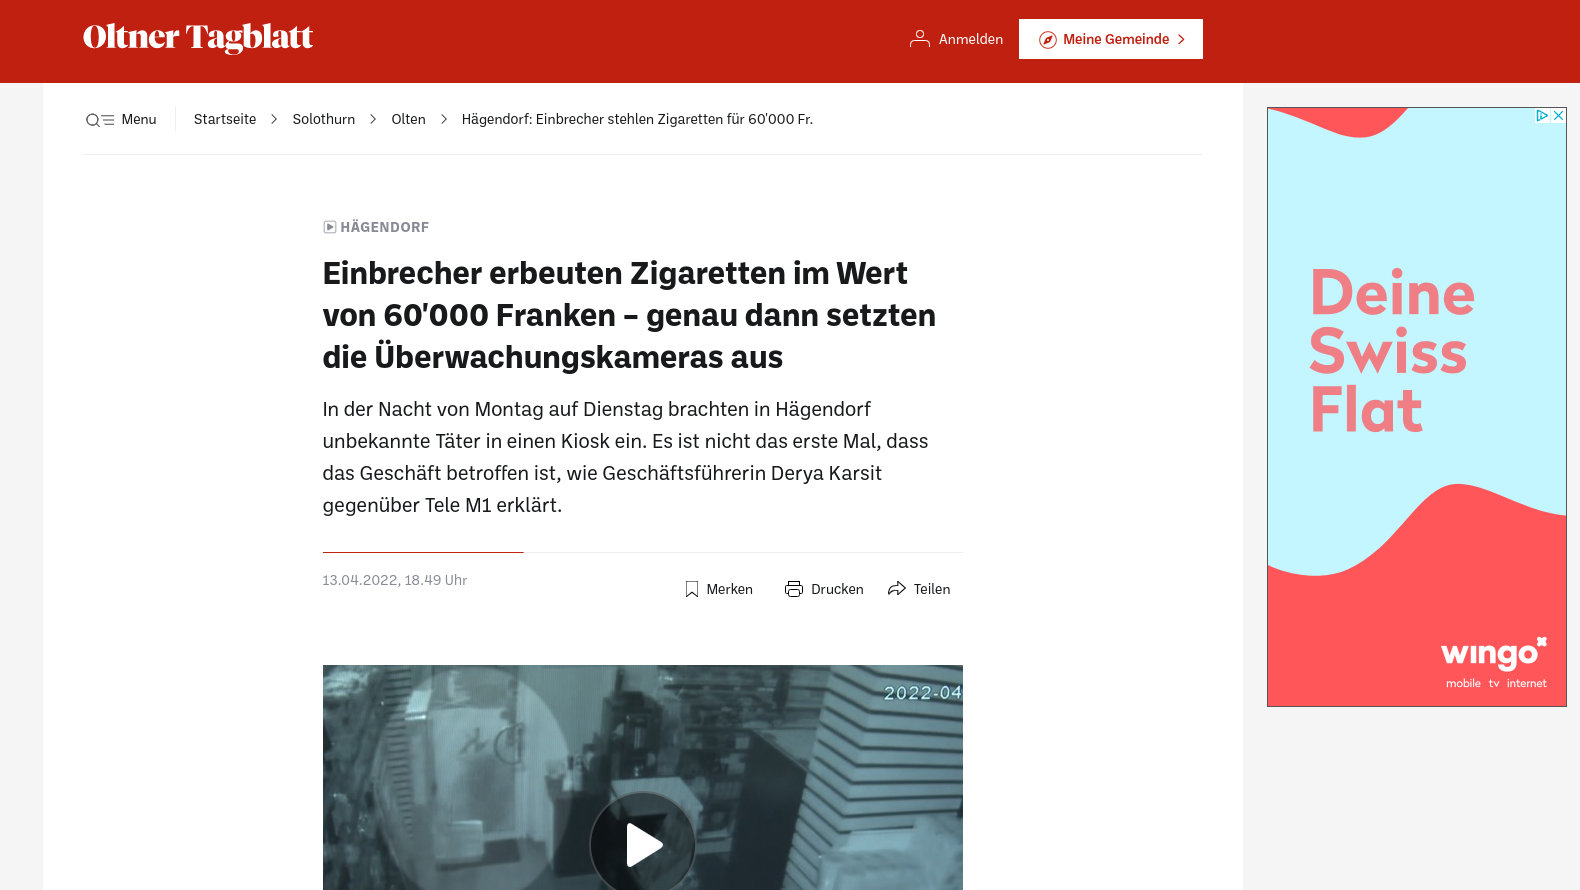 Solothurn: Einbrecher erbeuten Zigaretten im Wert von 60'000 Franken – genau dann setzten die Überwachungskameras aus